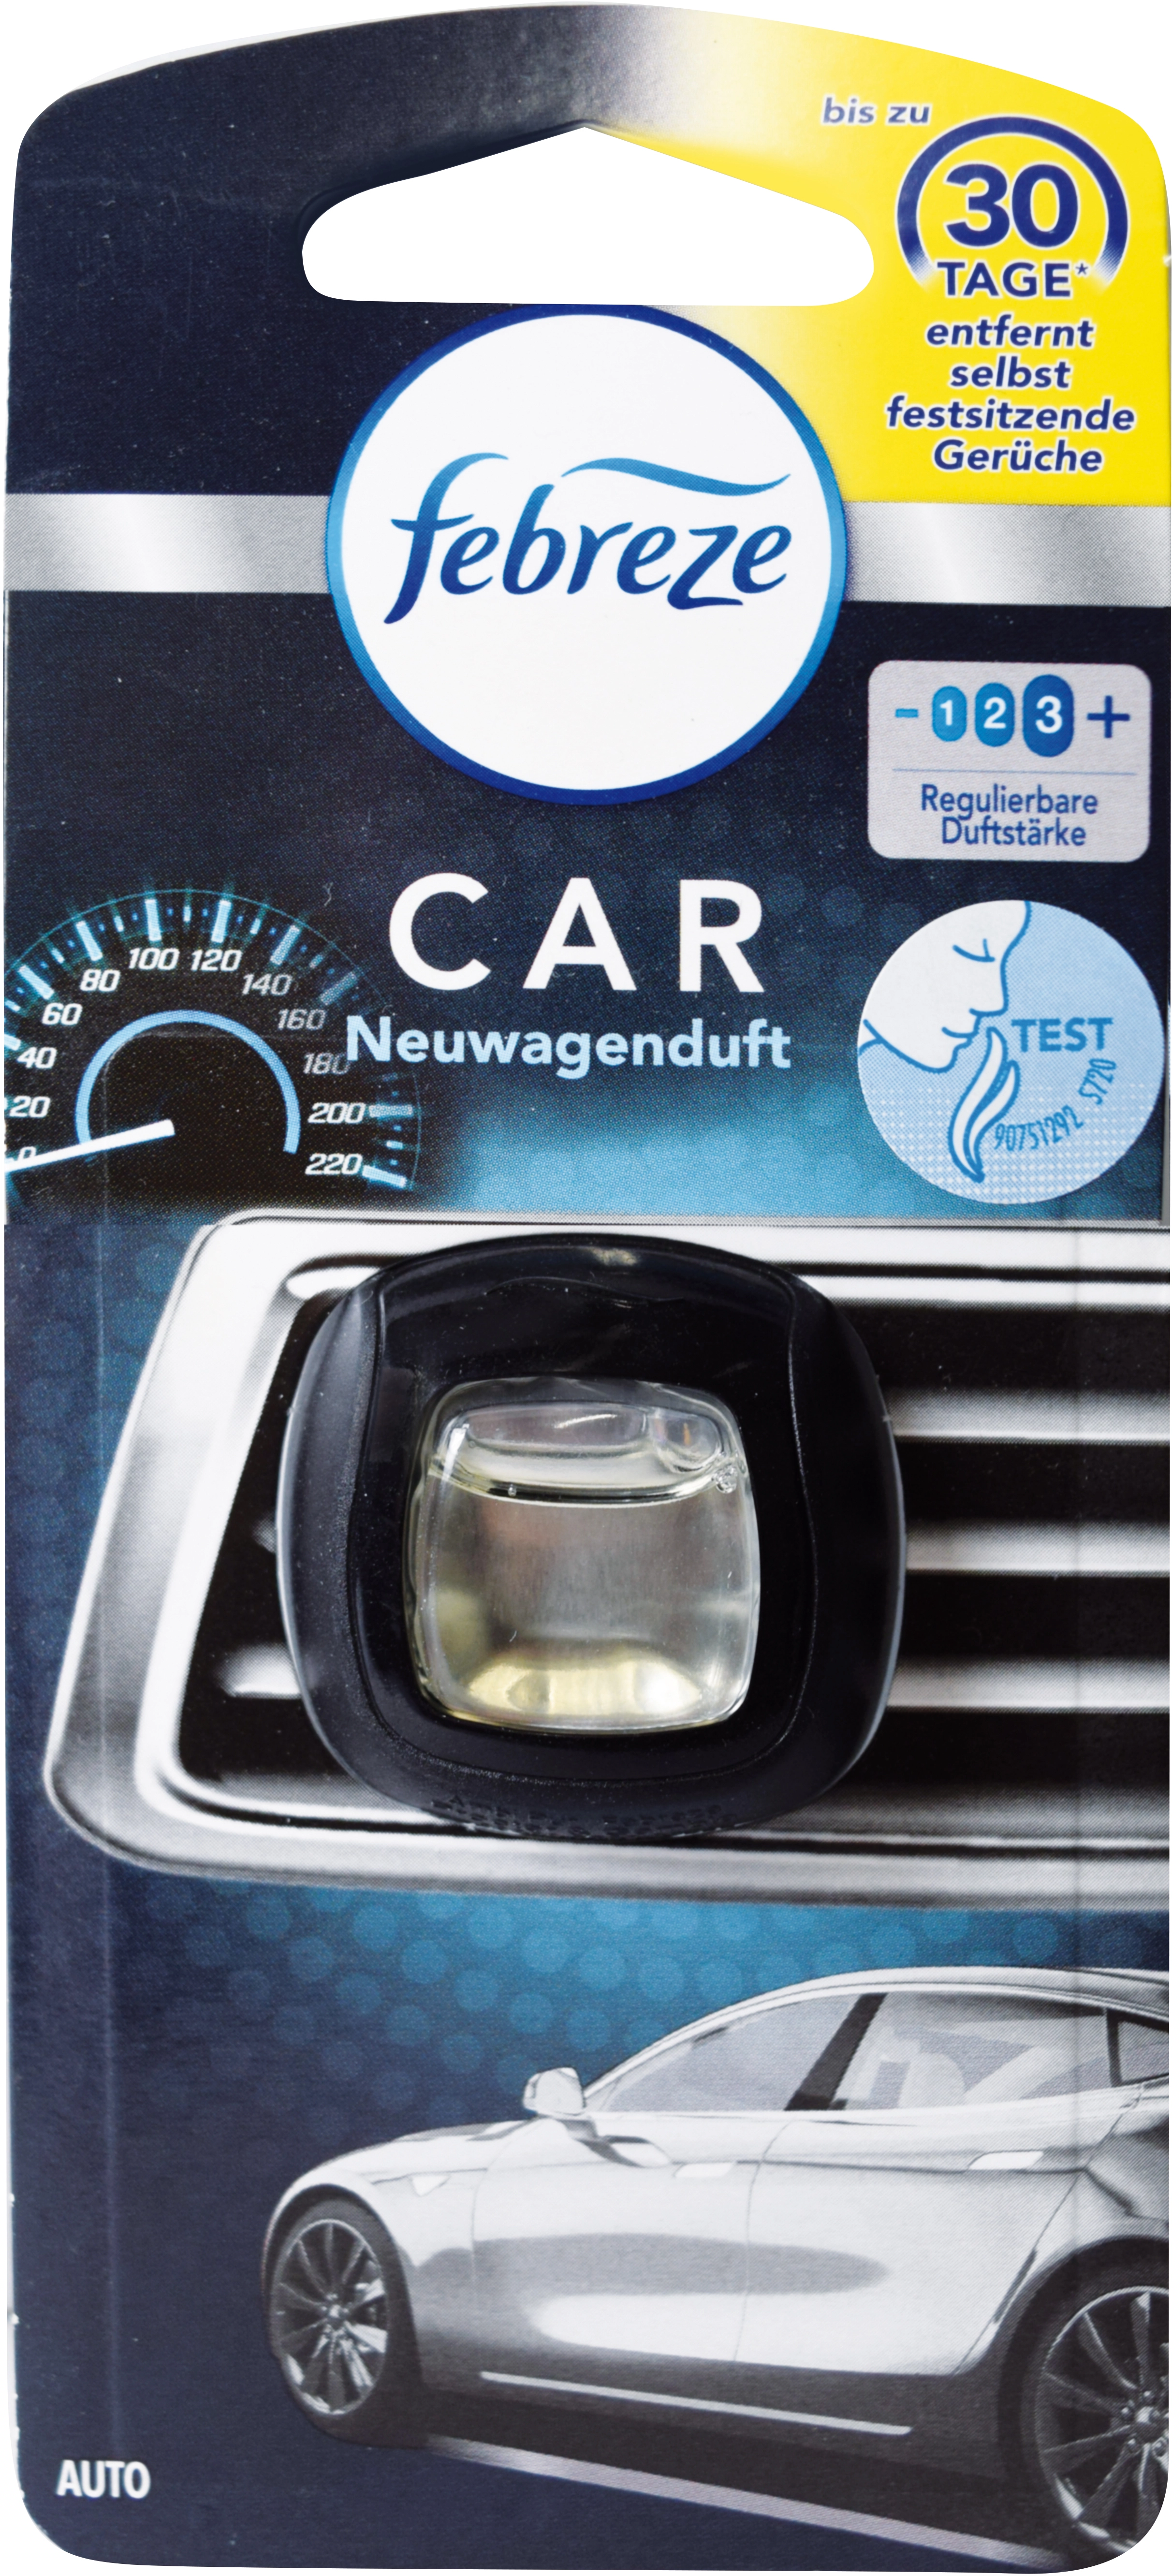 KFZ 7021: Automobile - Boîte à parfum, parfum de voiture neuve chez  reichelt elektronik